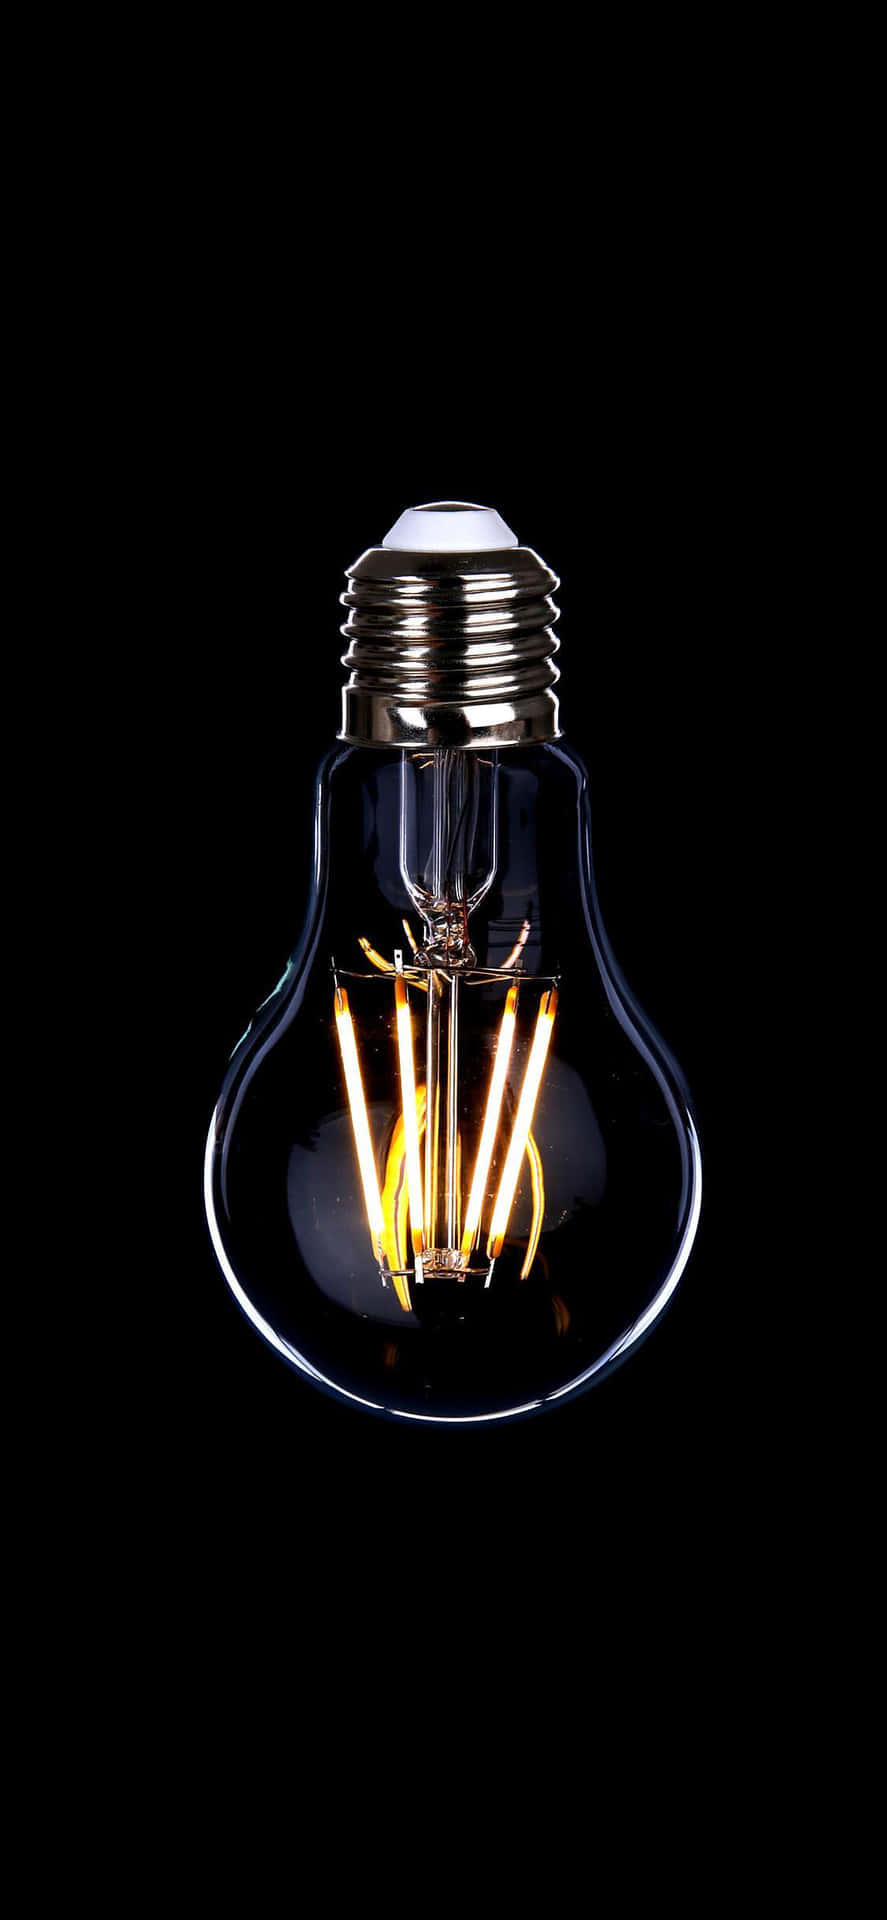 a black light bulb with a light bulb inside